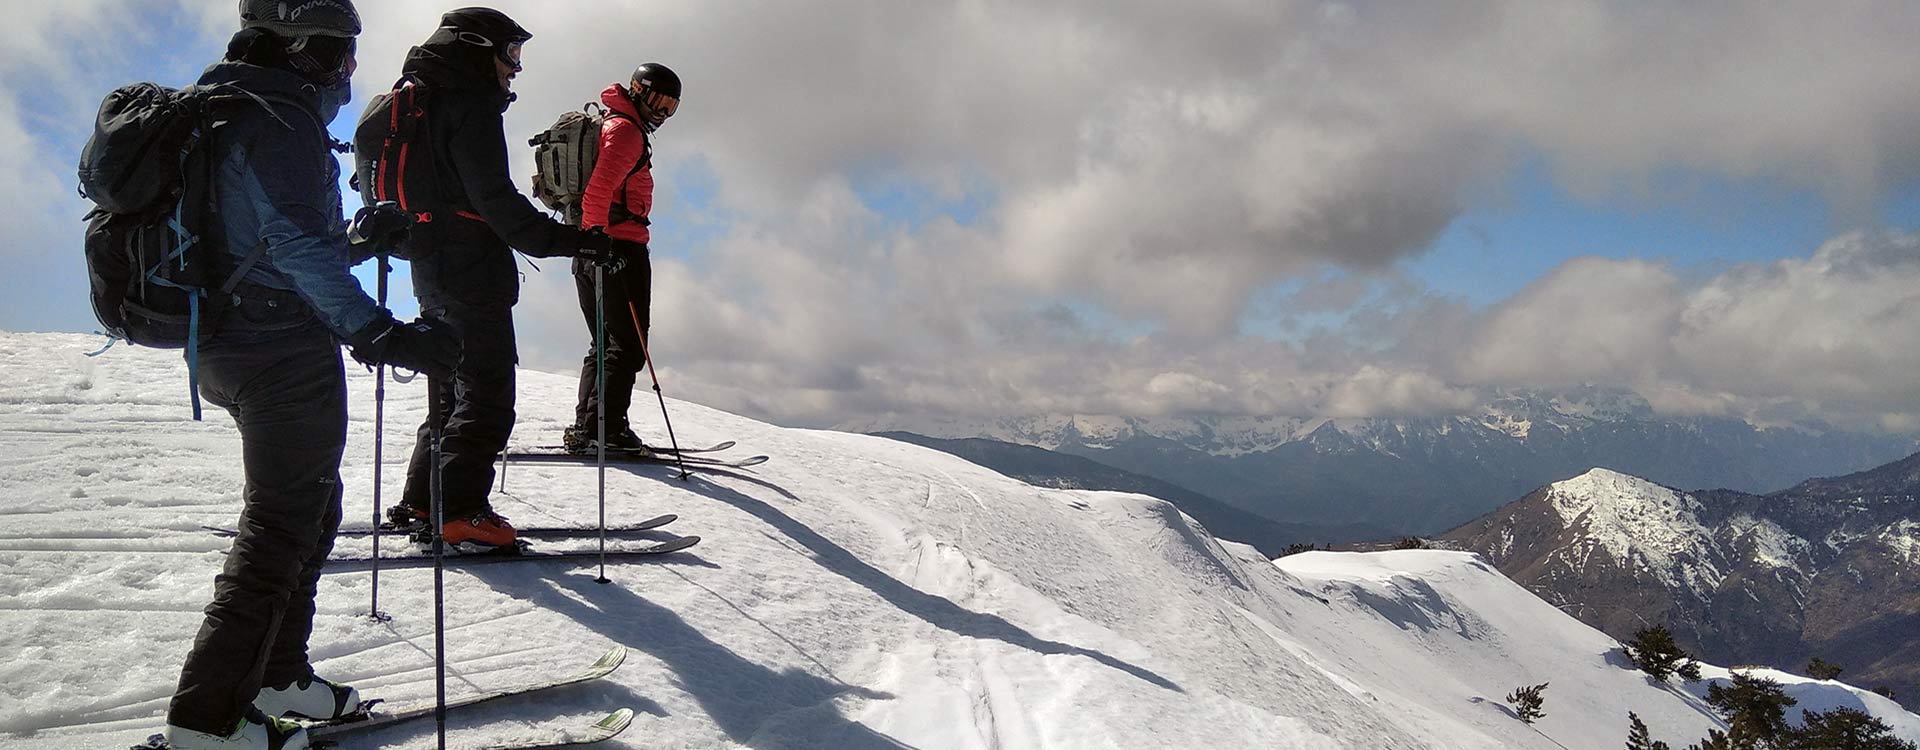 Ski touring hero Mountain Goat Greece